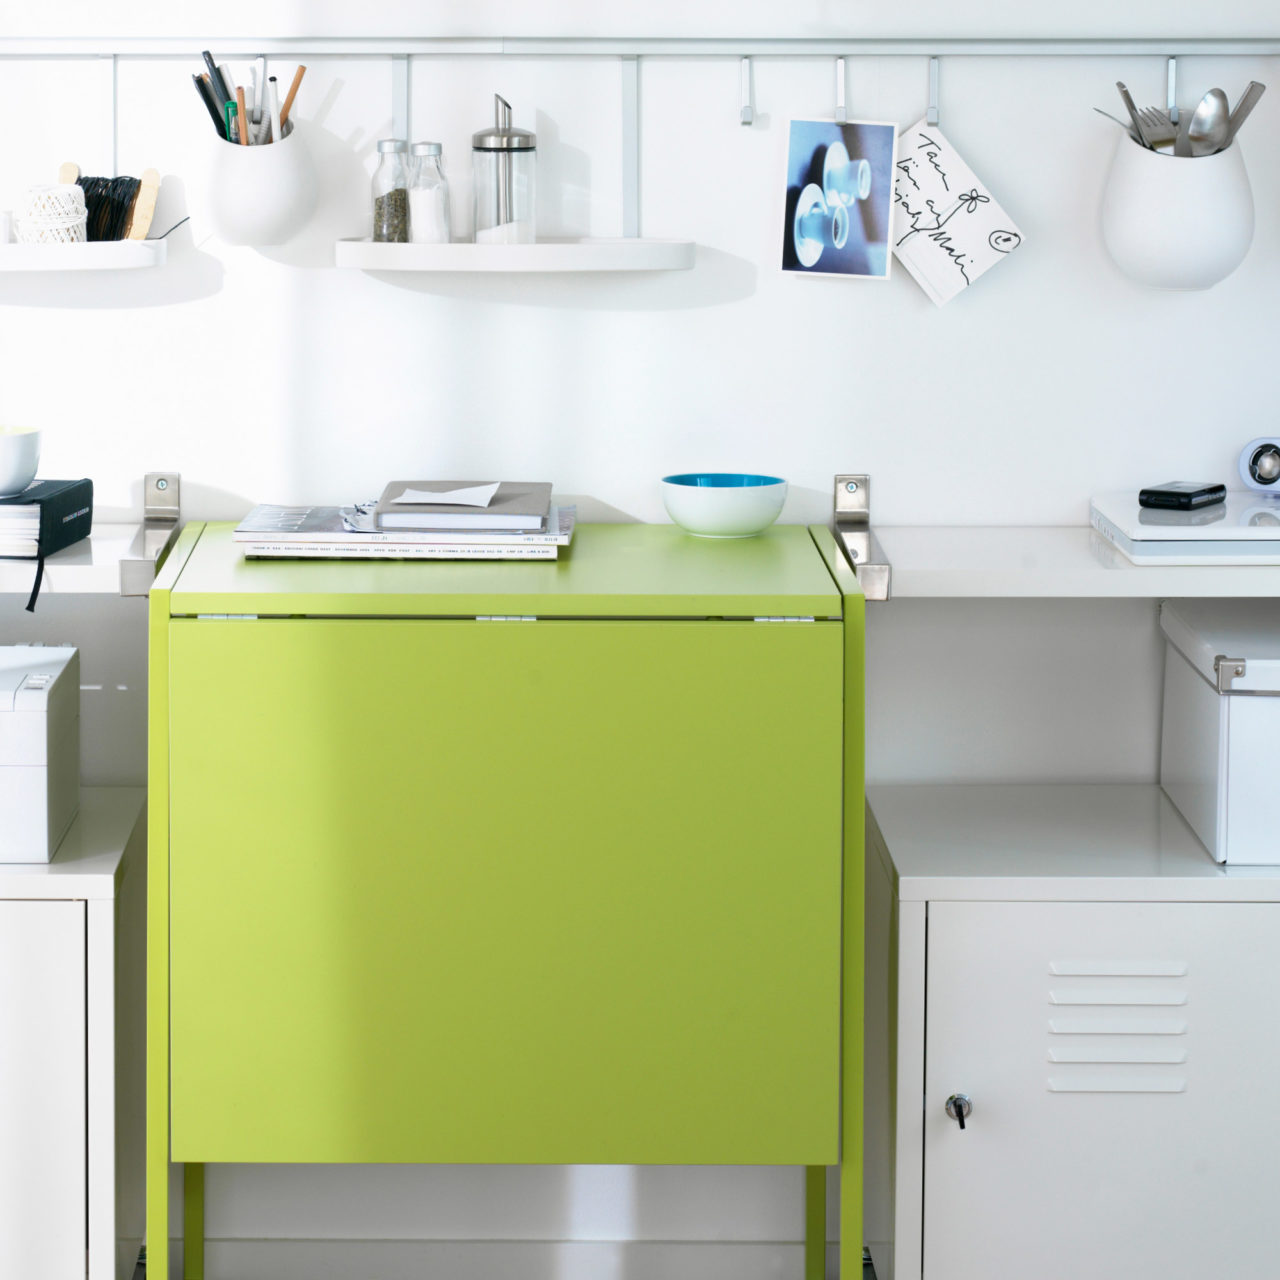 Vit väggsektion där ett limegrönt, nedfällt klaffbord omges av hyllor, metallskåp och småförvaring i vitt.